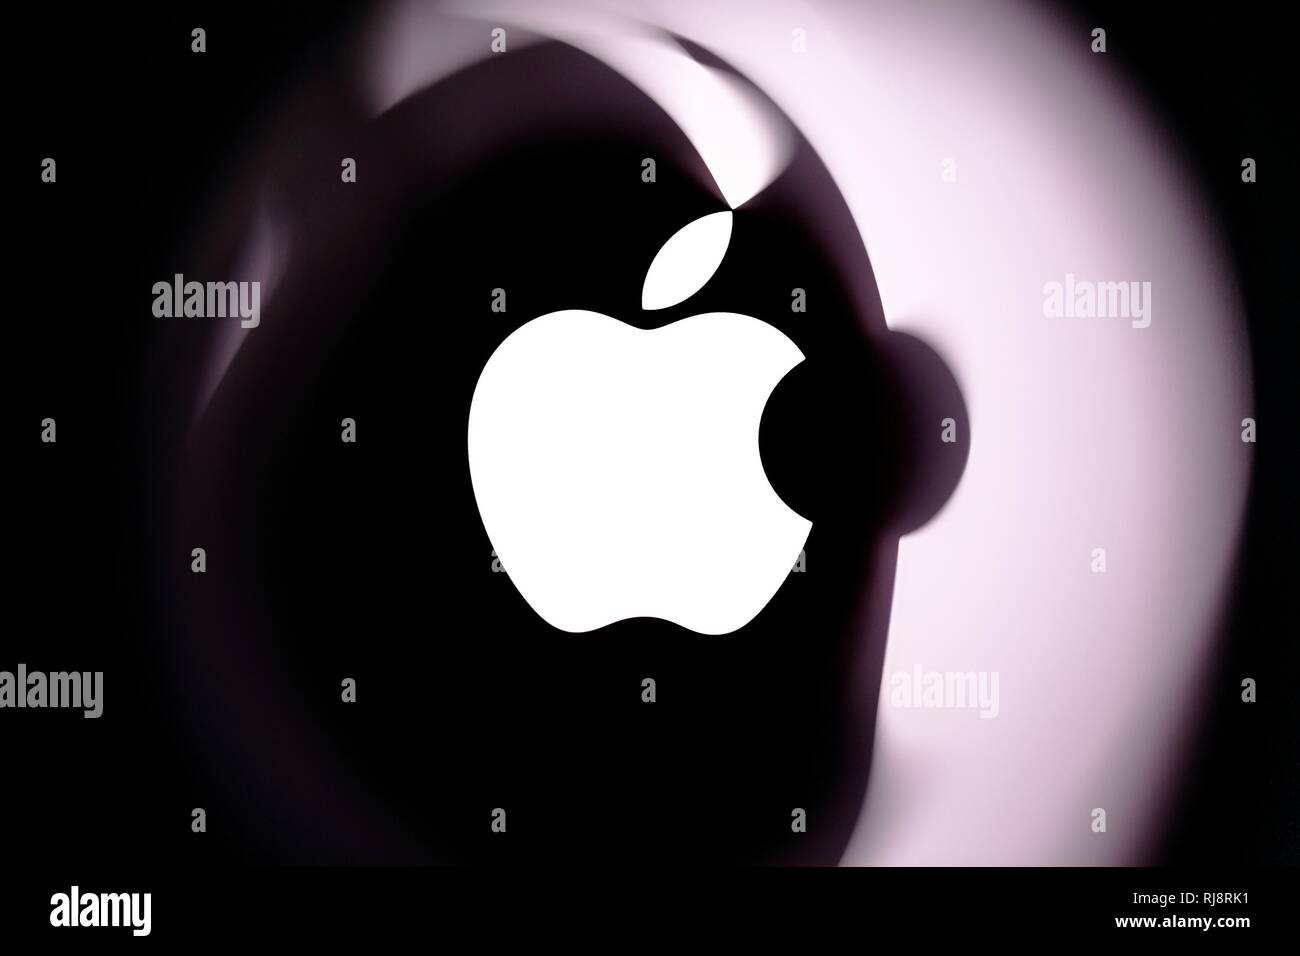 République tchèque - Le 16 mars 2015:Création de logo Apple sur Mac Book Air reflétant dans une feuille transparente. Rédaction d'illustration. Usage éditorial uniquement. Banque D'Images